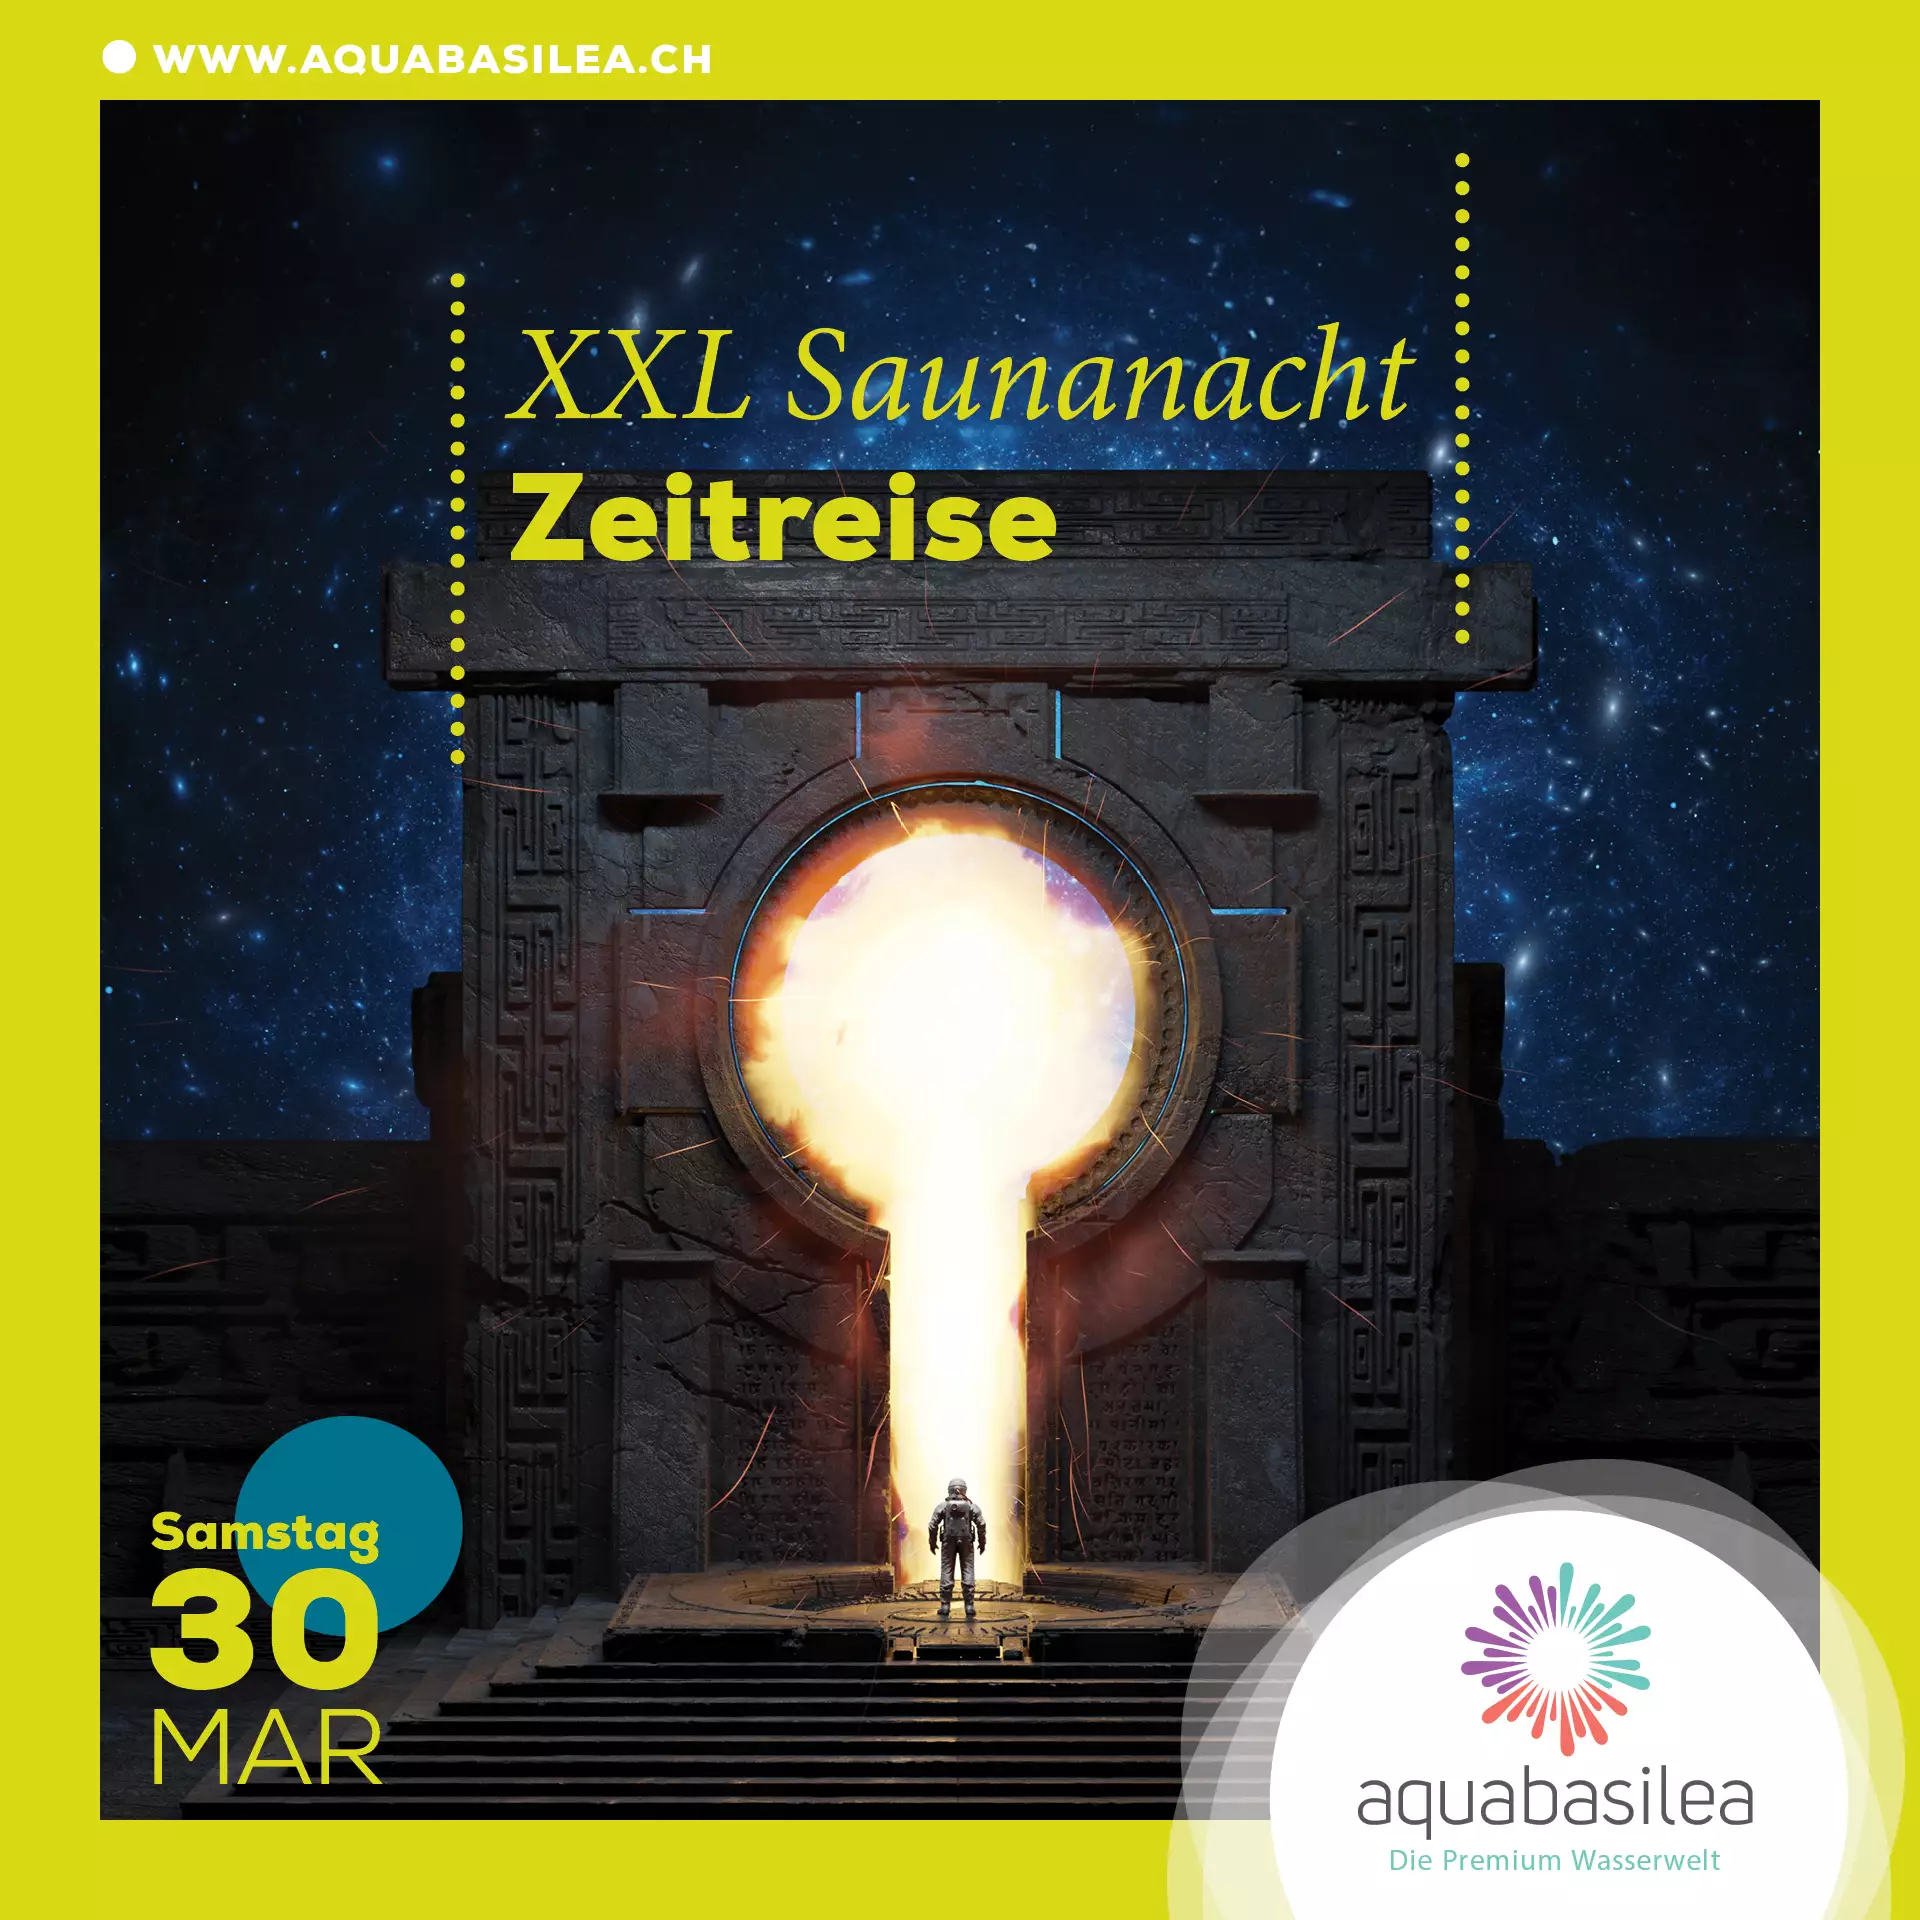 XXL Saunanacht "Zeitreise" am 30. März ab 18 Uhr